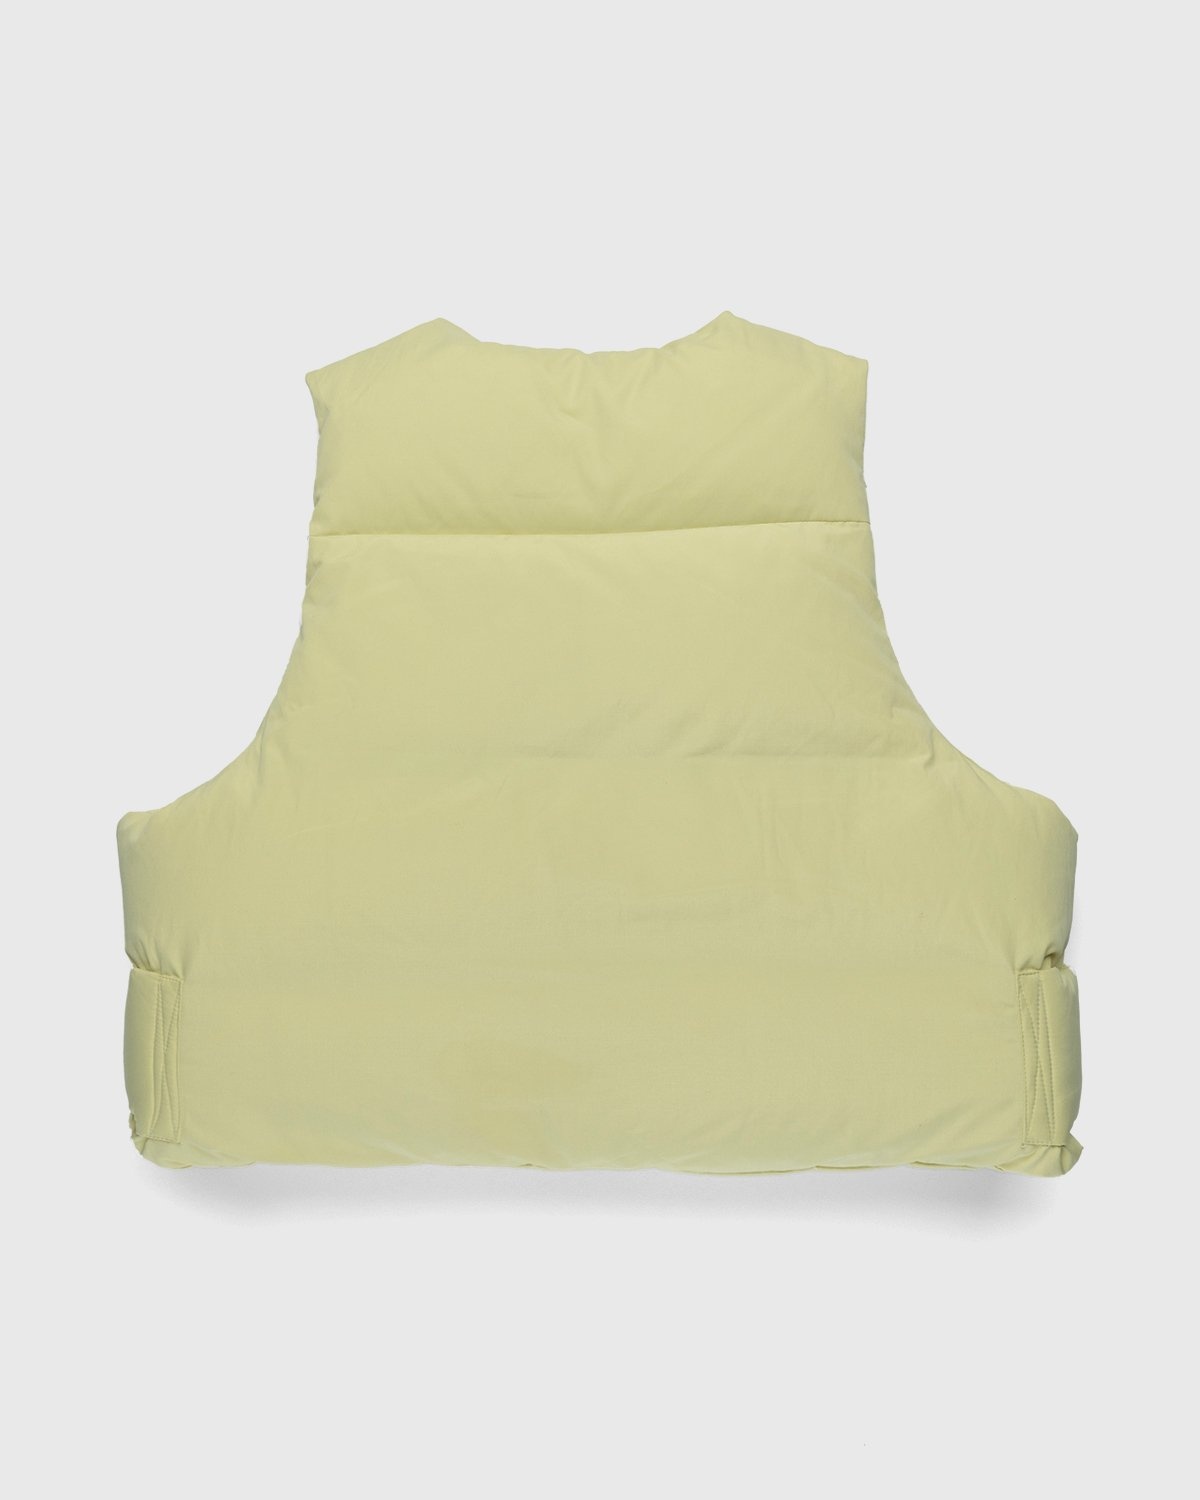 Entire Studios – Pillow Vest Blonde - Vests - Yellow - Image 2